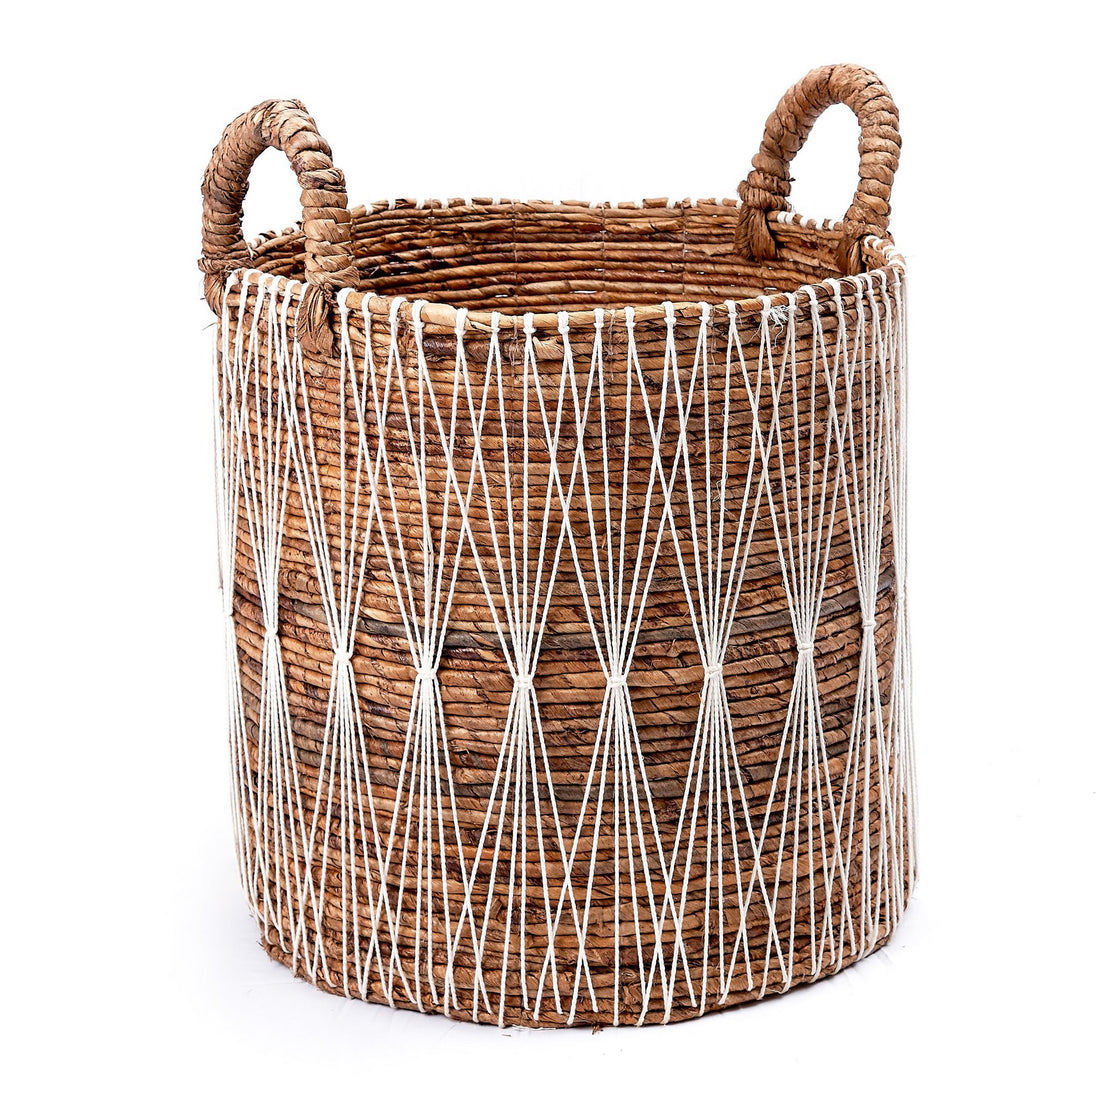 Boho Laundry Basket | Plant Basket | Storage Basket MANDURO made of Banana Fibre (3 sizes)